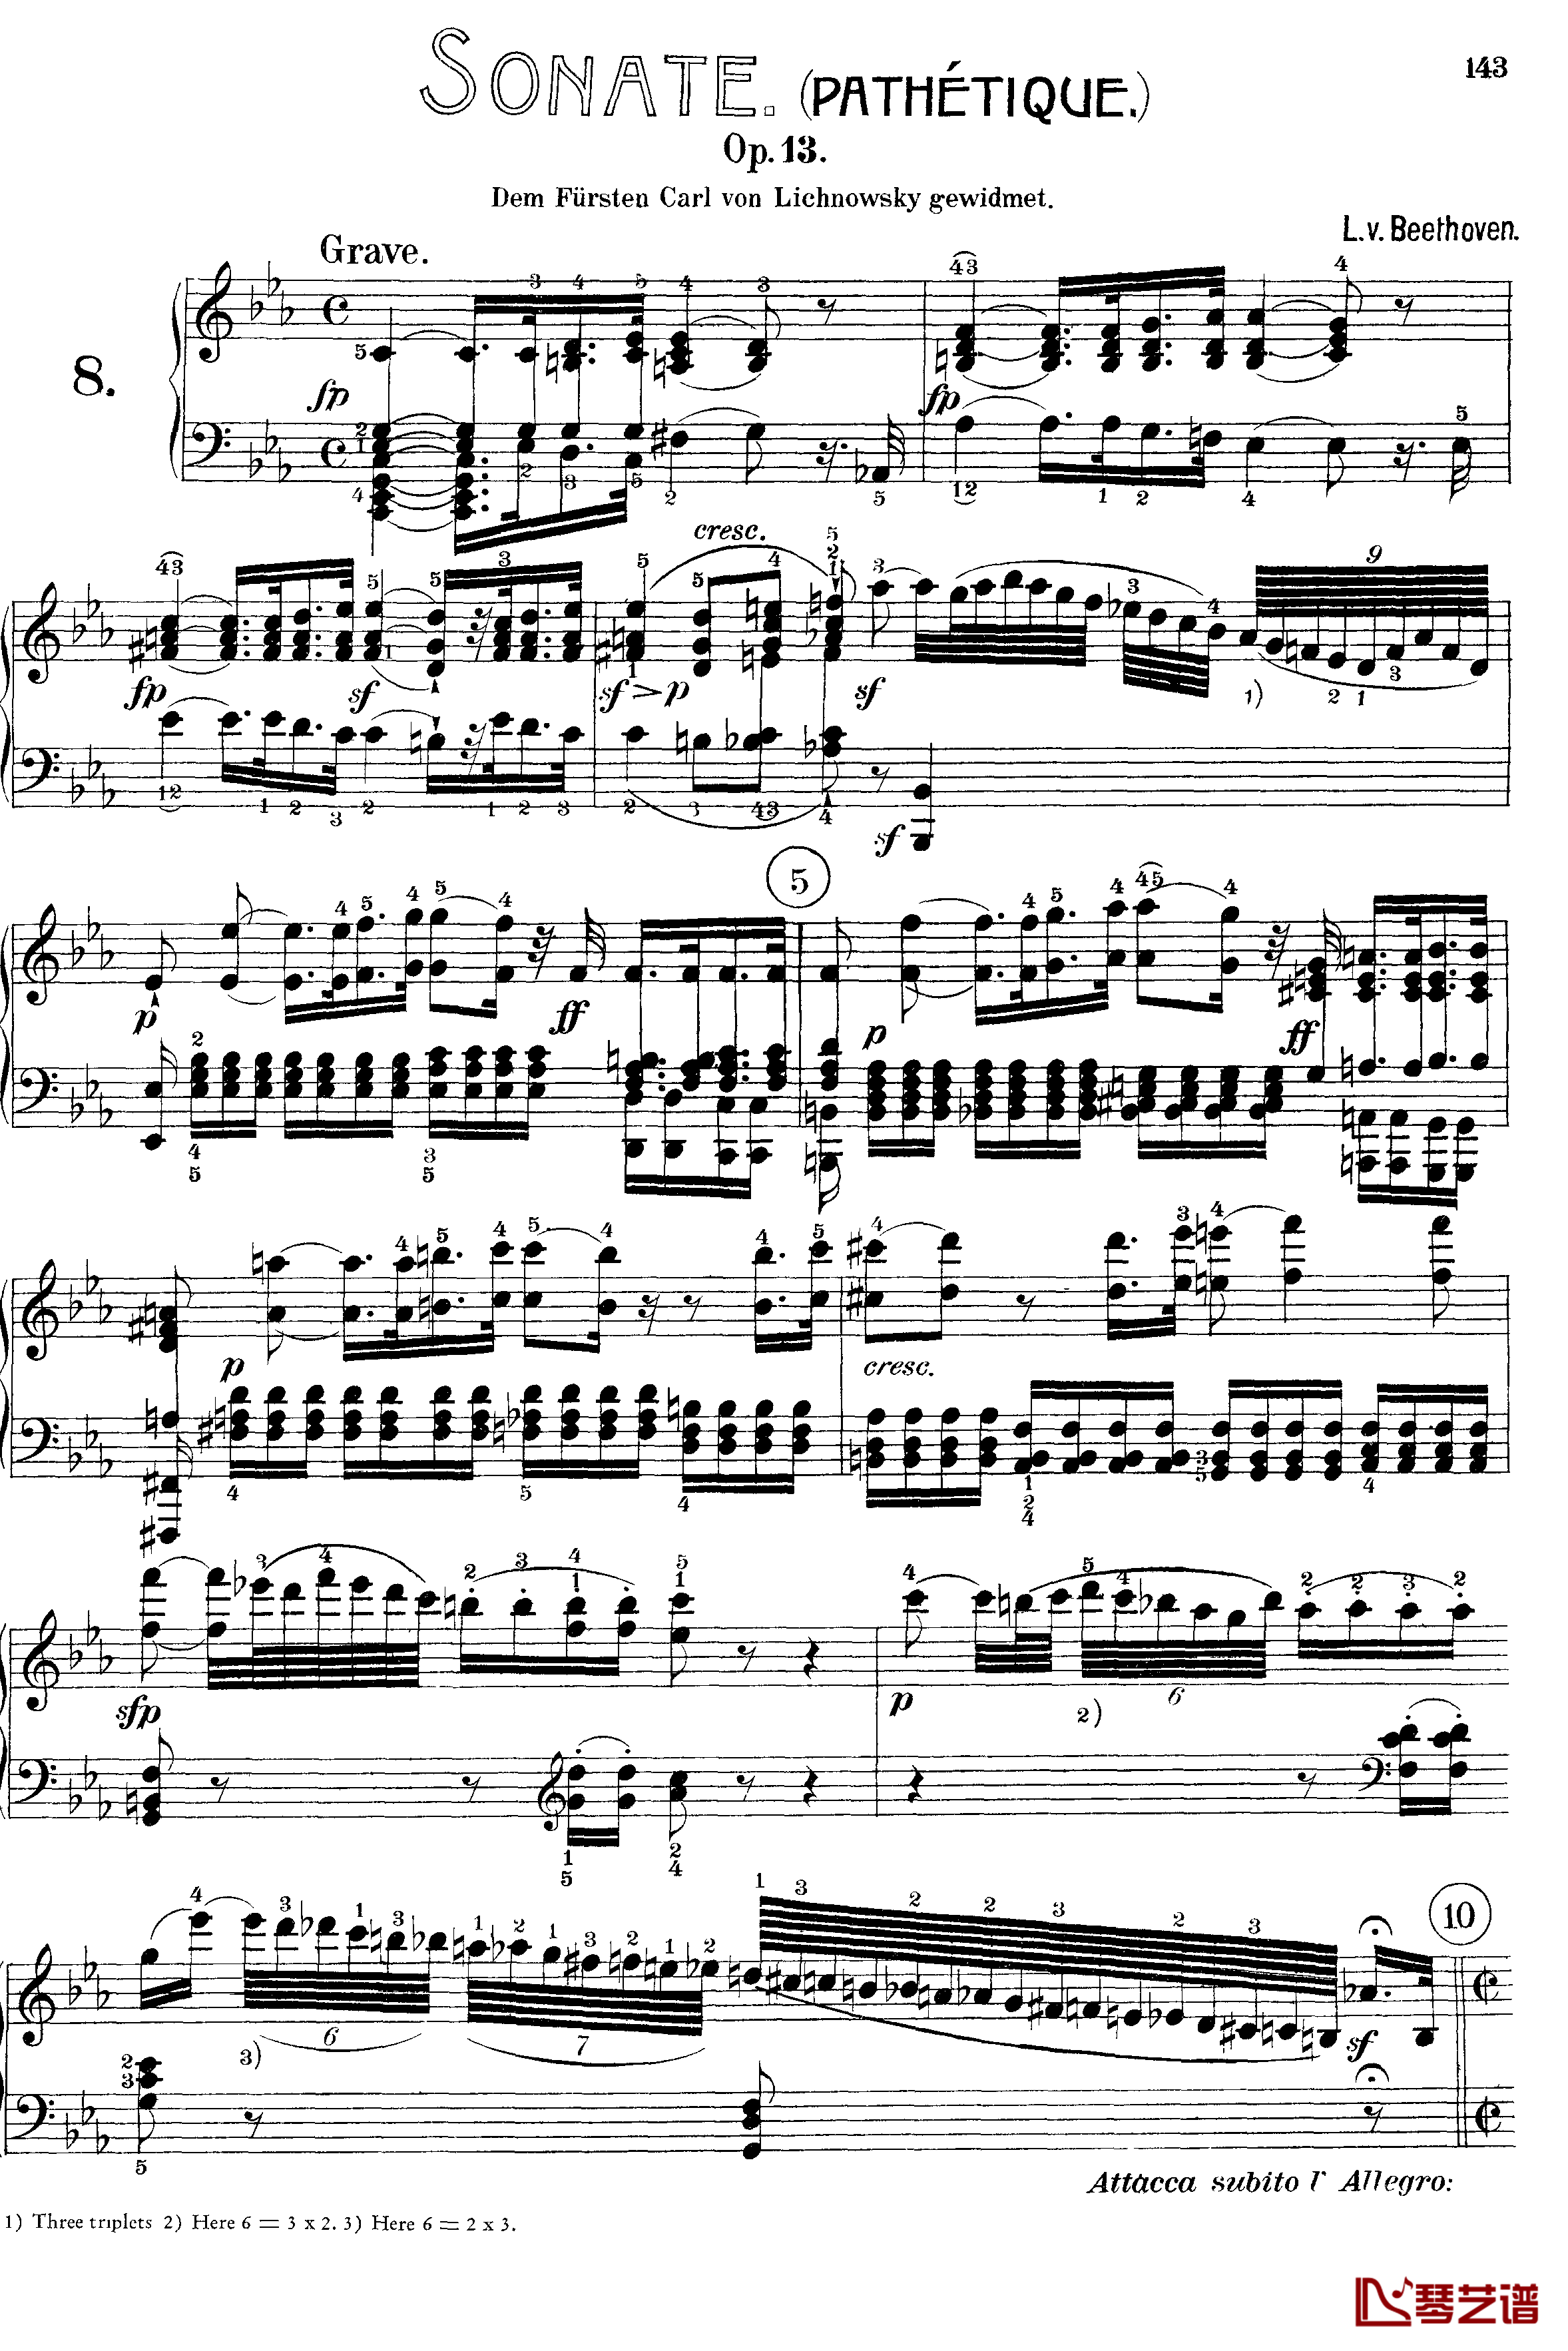 悲怆钢琴谱-c小调第八号钢琴奏鸣曲-全乐章-带指法版-贝多芬-beethoven1